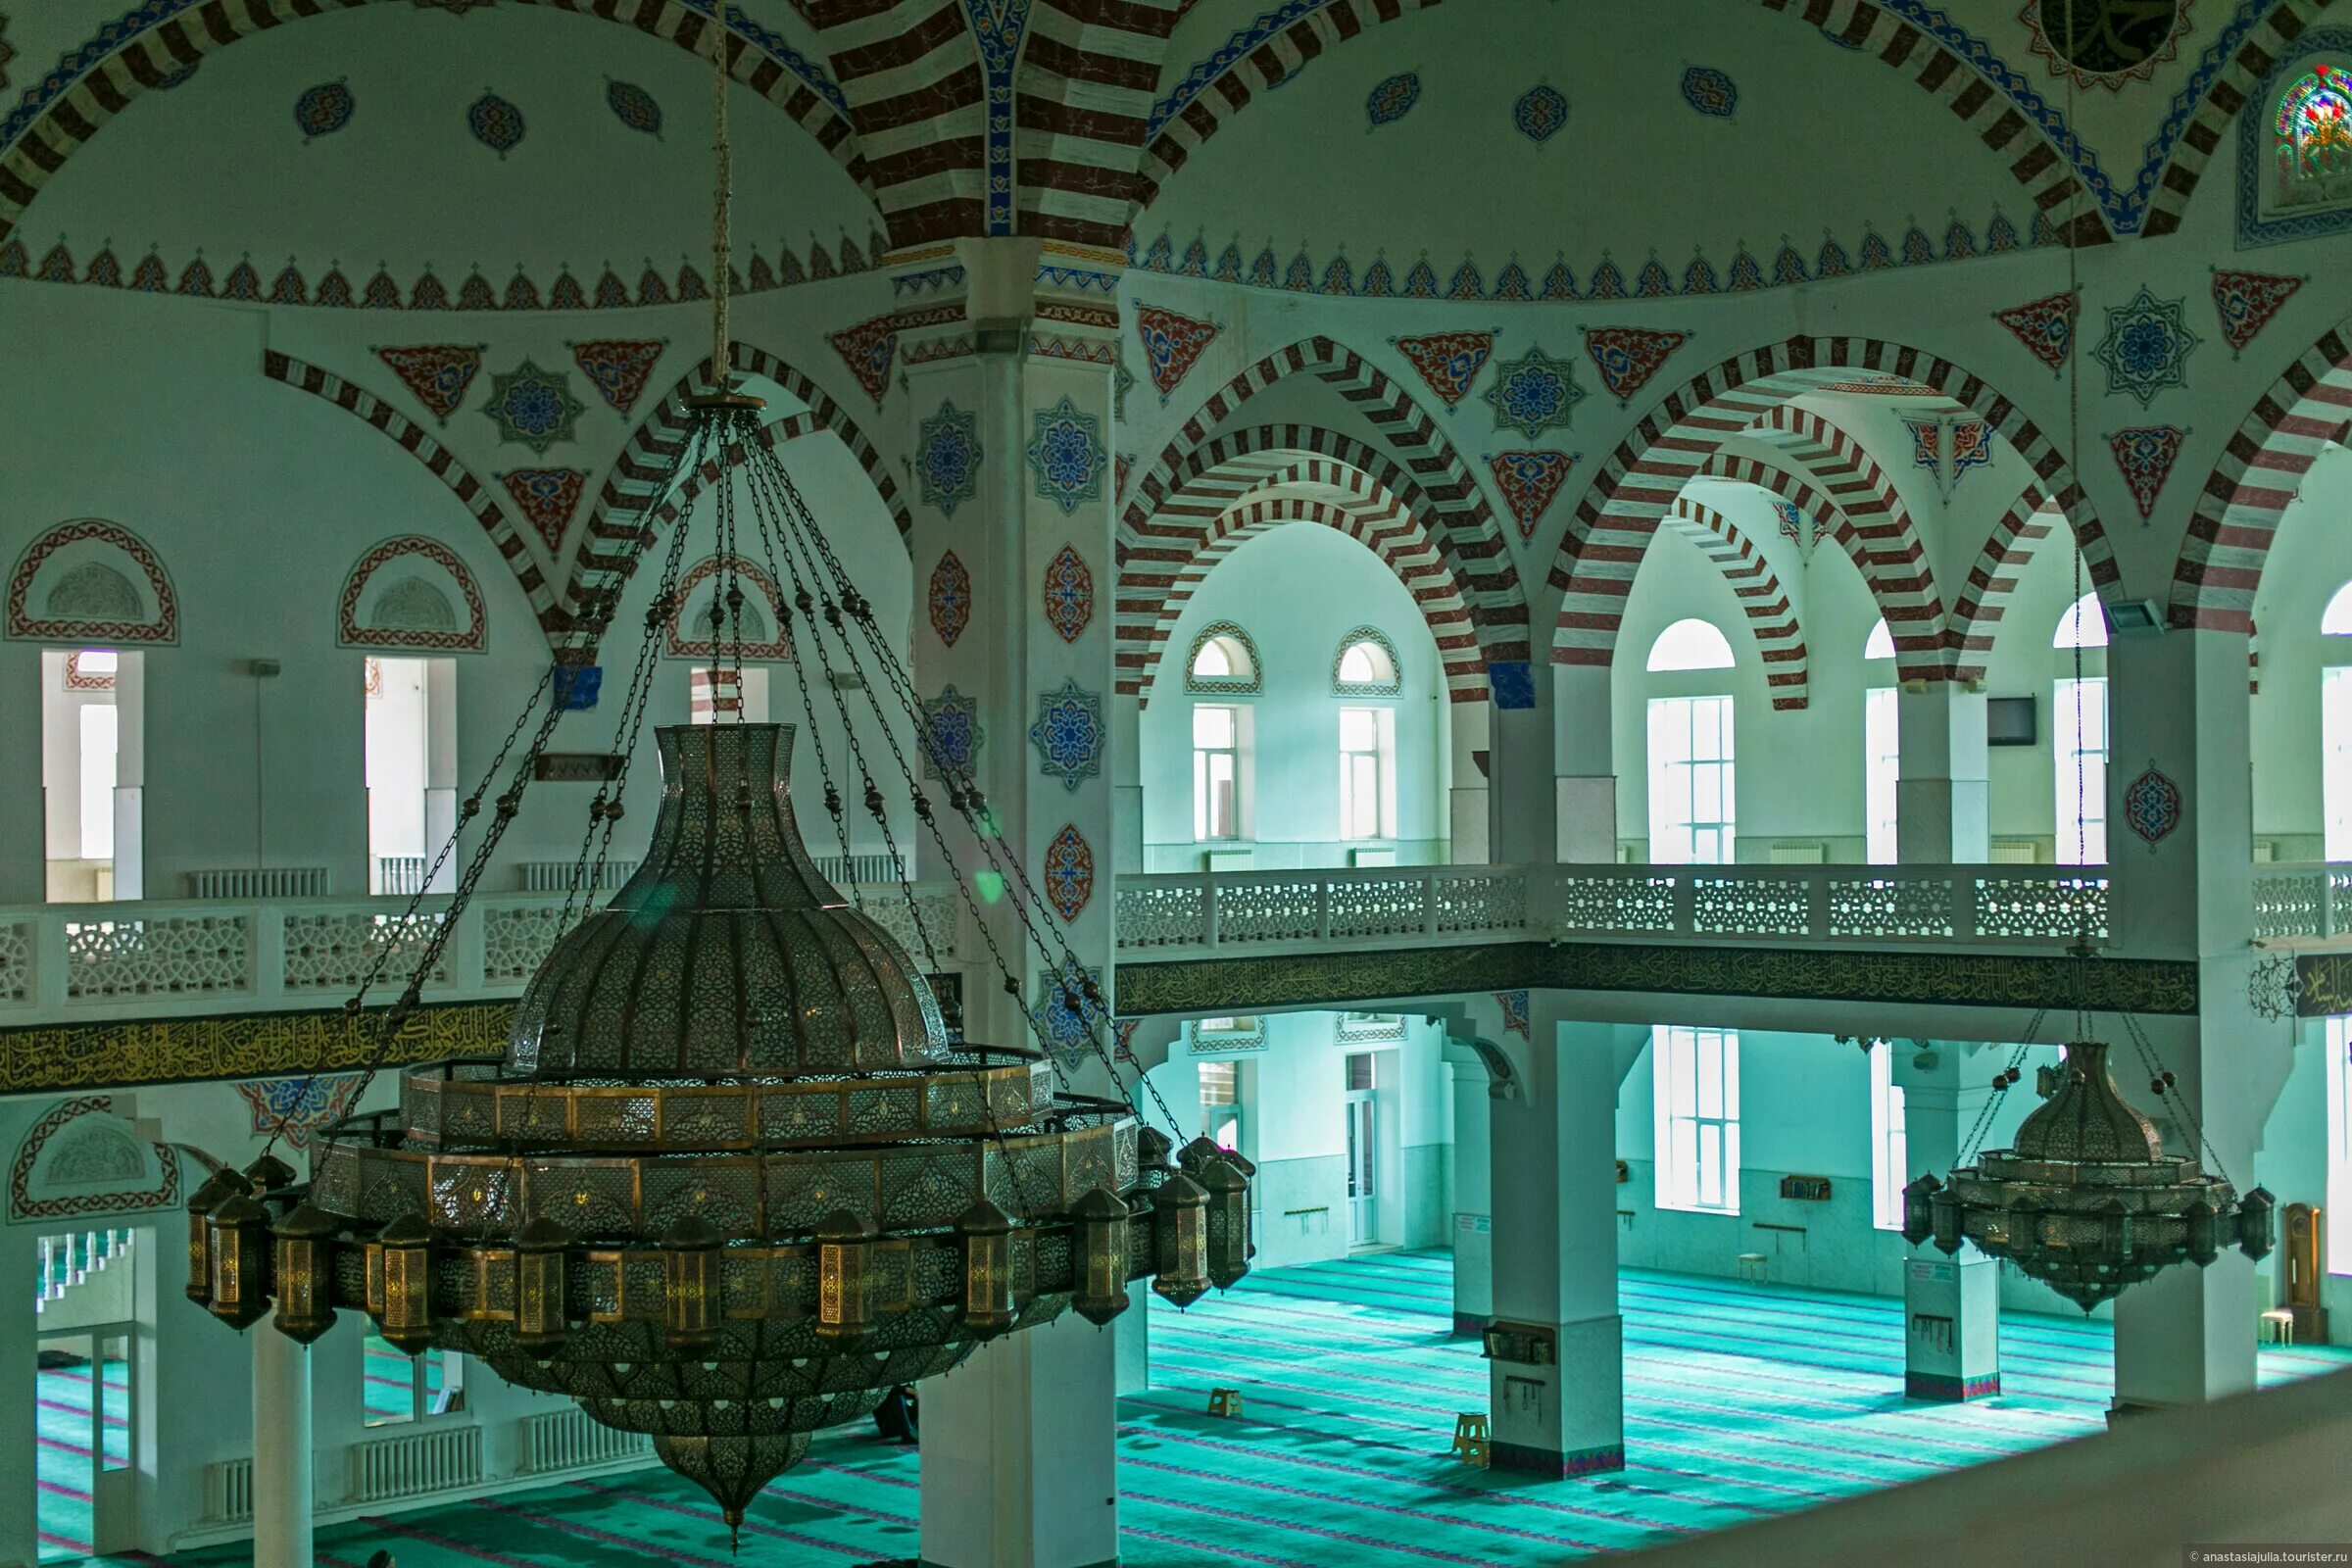 Джума дагестан. Центральная Джума-мечеть. Центральная Джума-мечеть (Дагестан, Махачкала). Соборная мечеть Махачкалы. Центральная Джума-мечеть внутри.